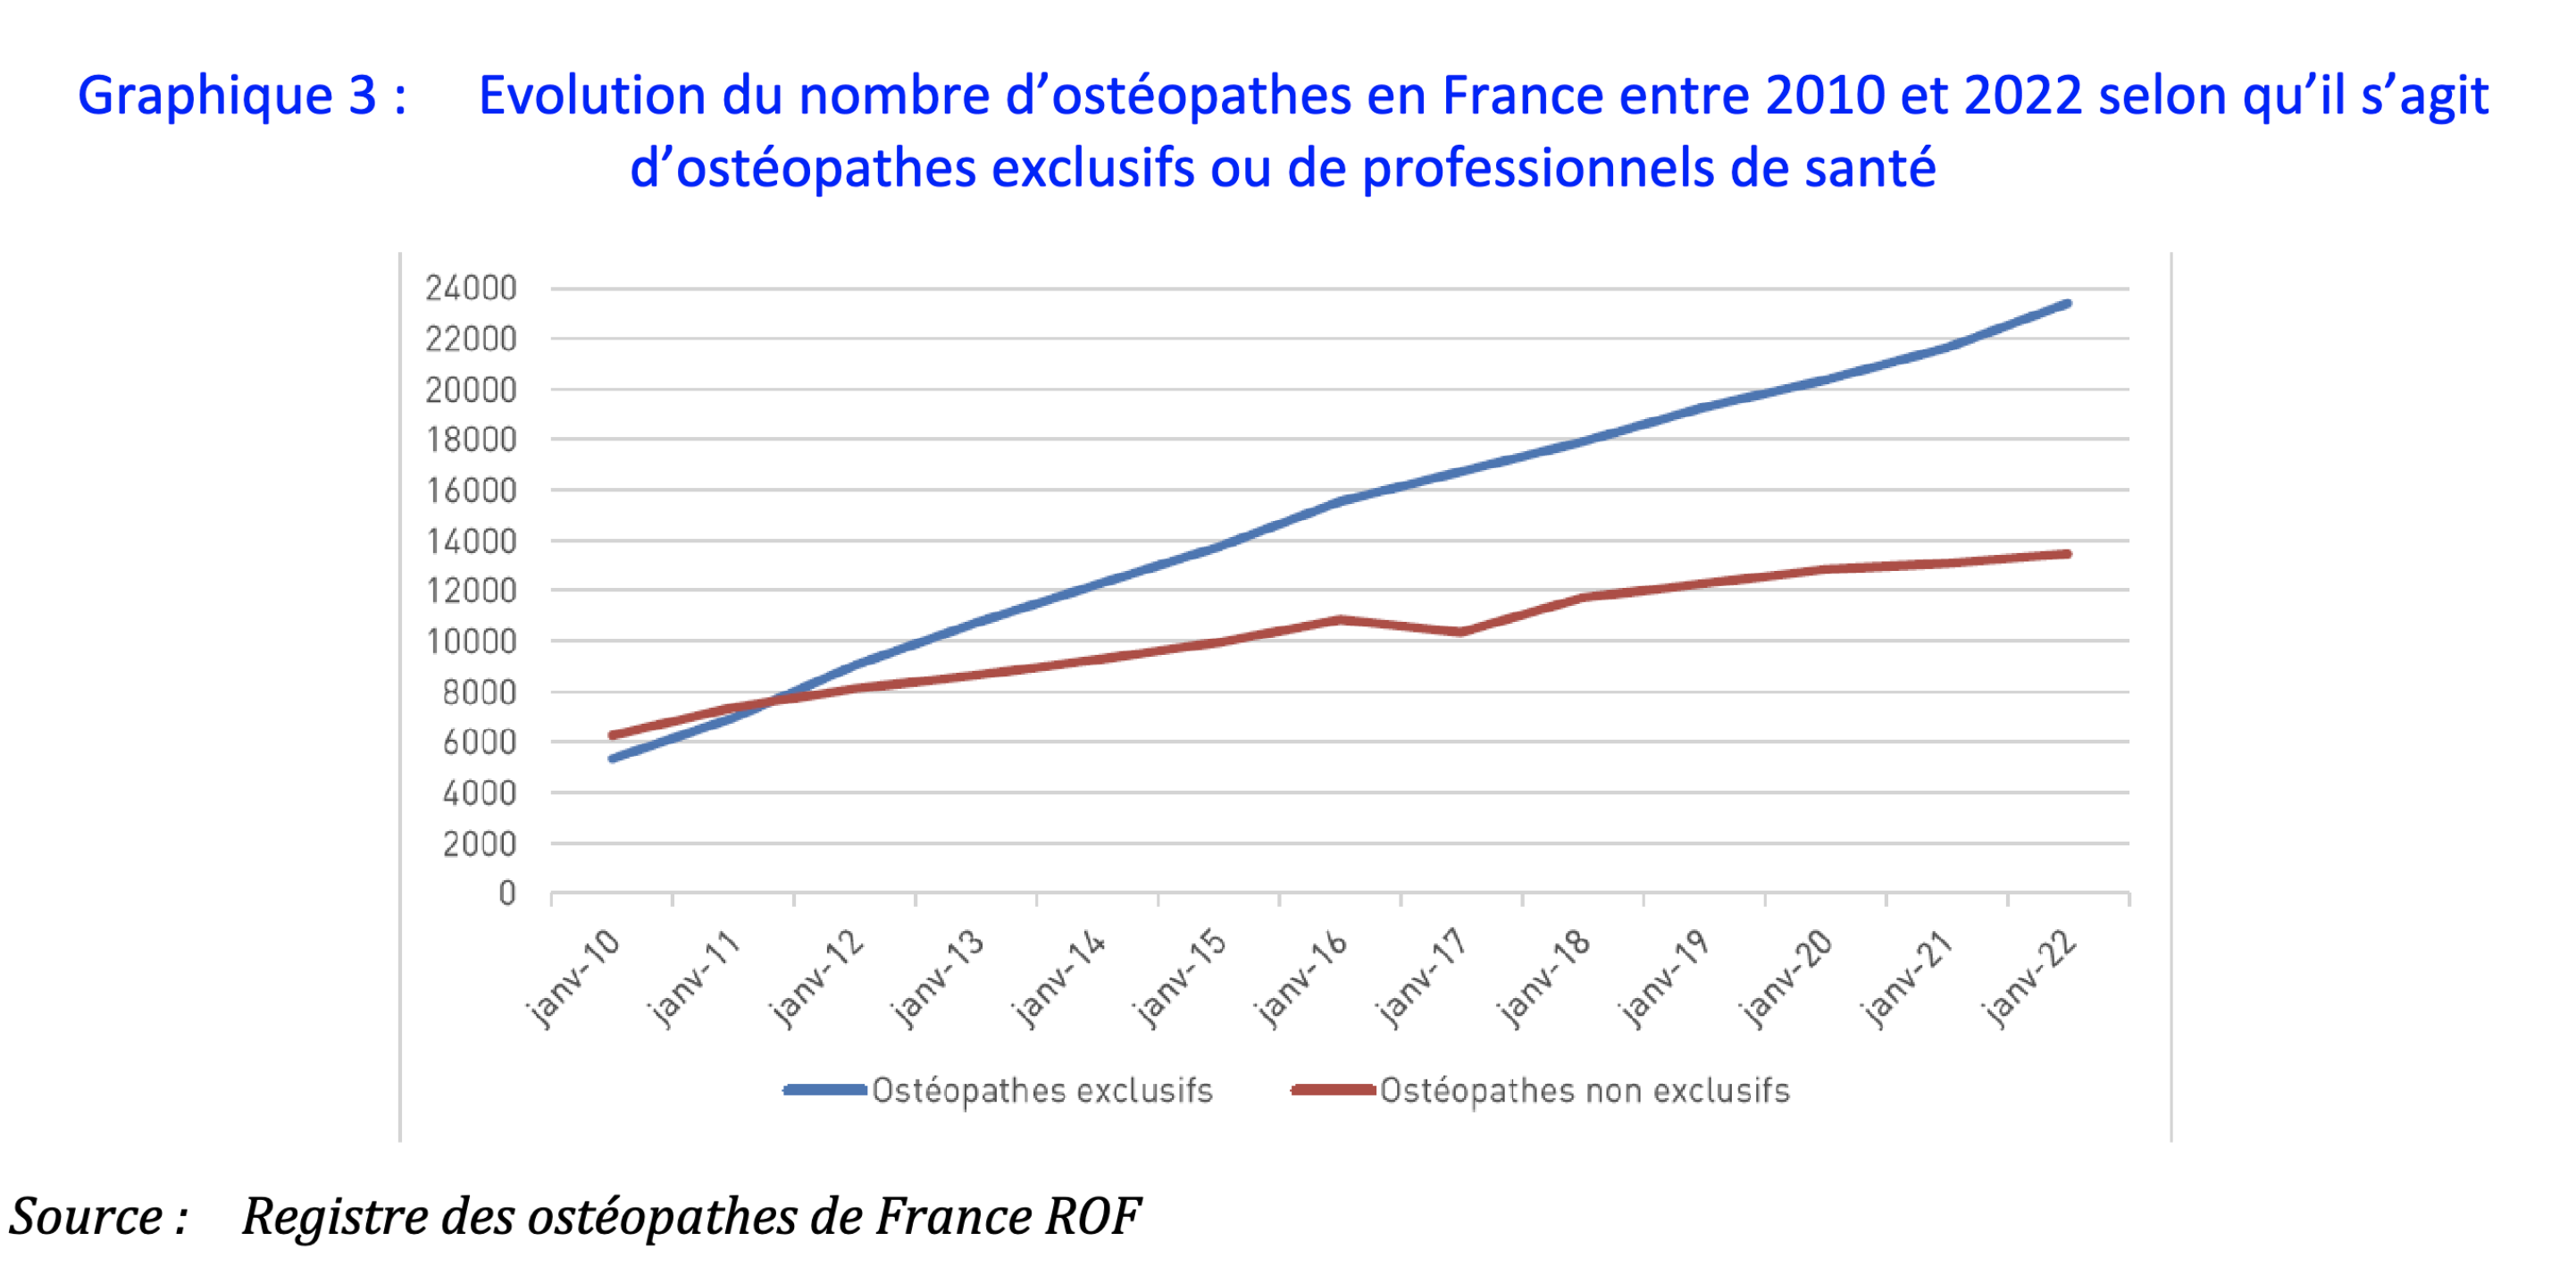 Évolution du nombre d’ostéopathes en France entre 2010 et 2022 selon qu’il s’agit d’ostéopathes exclusifs ou de professionnels de santé